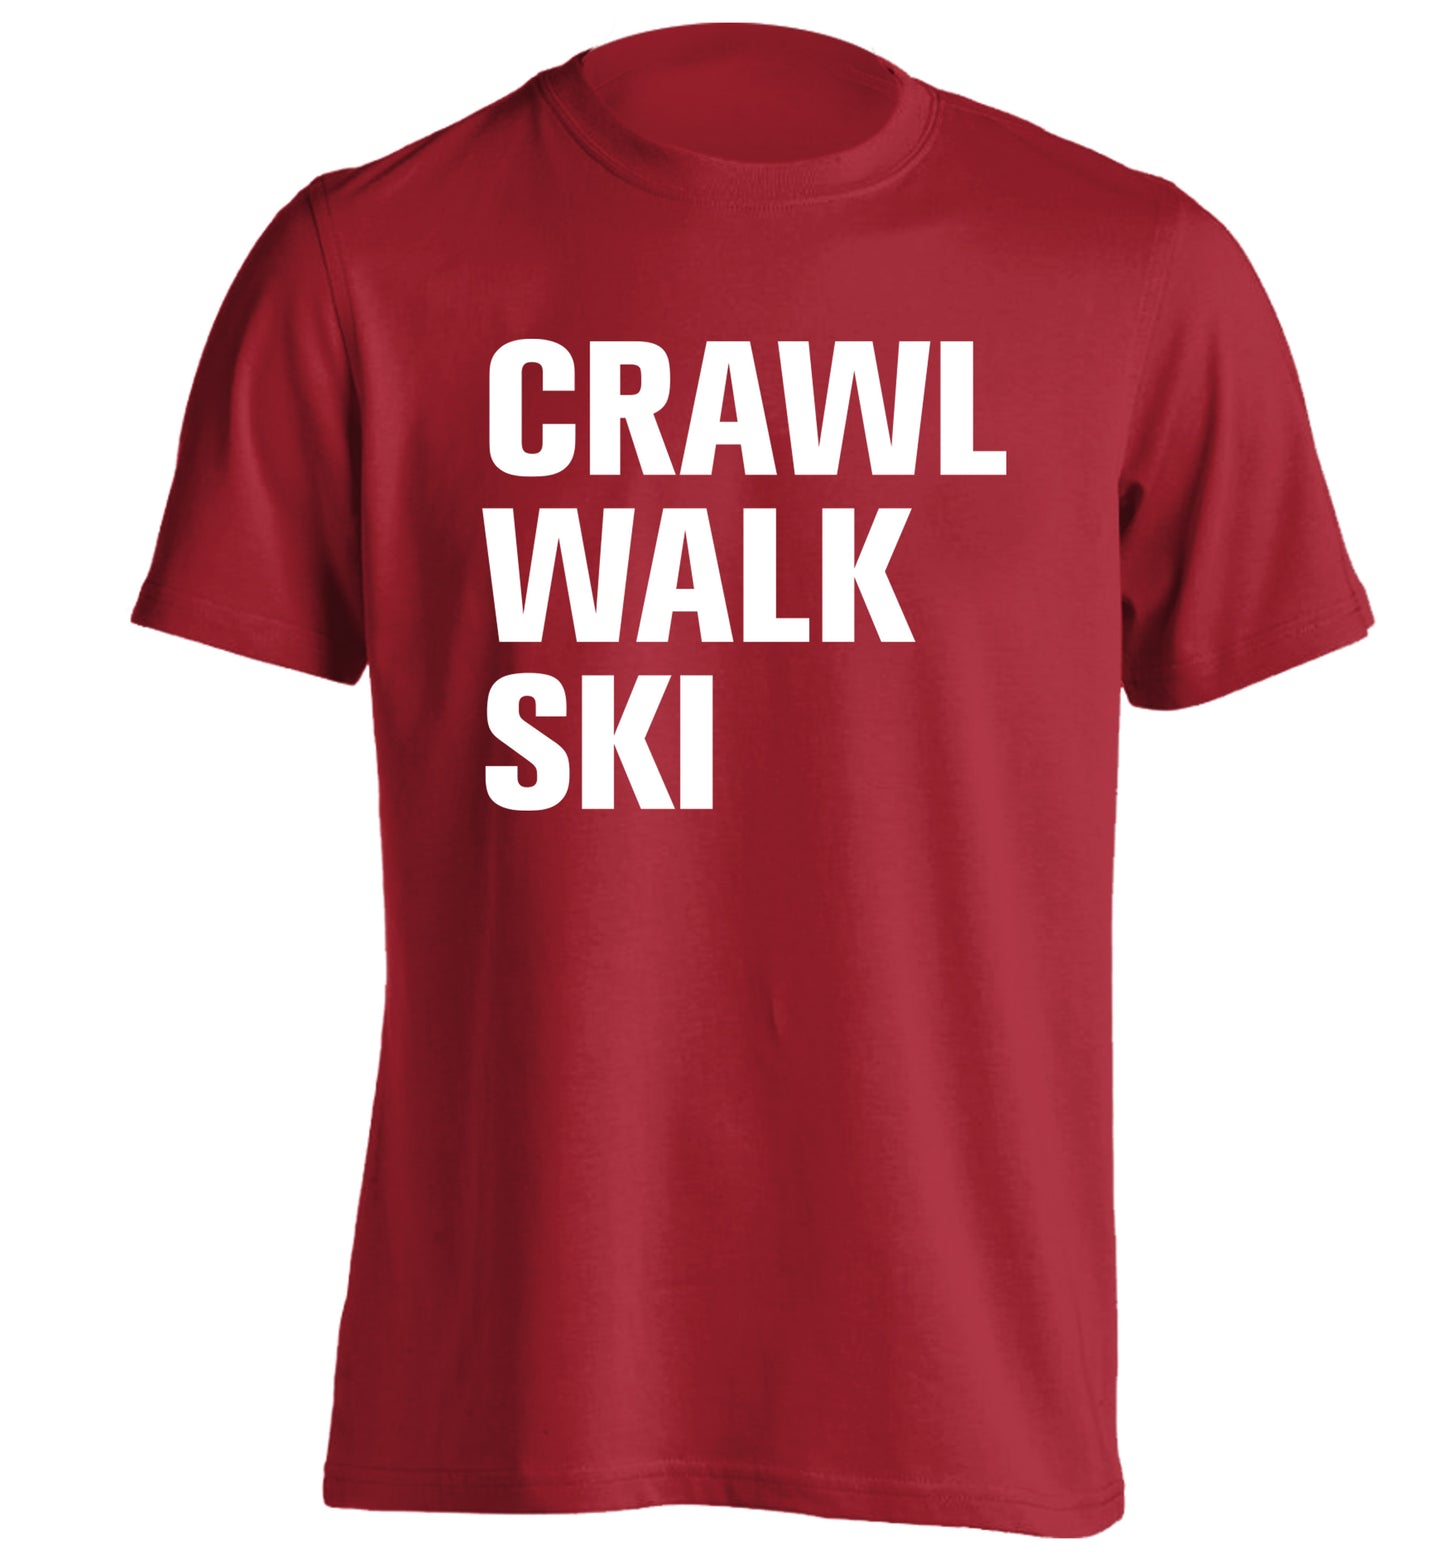 Crawl walk ski adults unisexred Tshirt 2XL